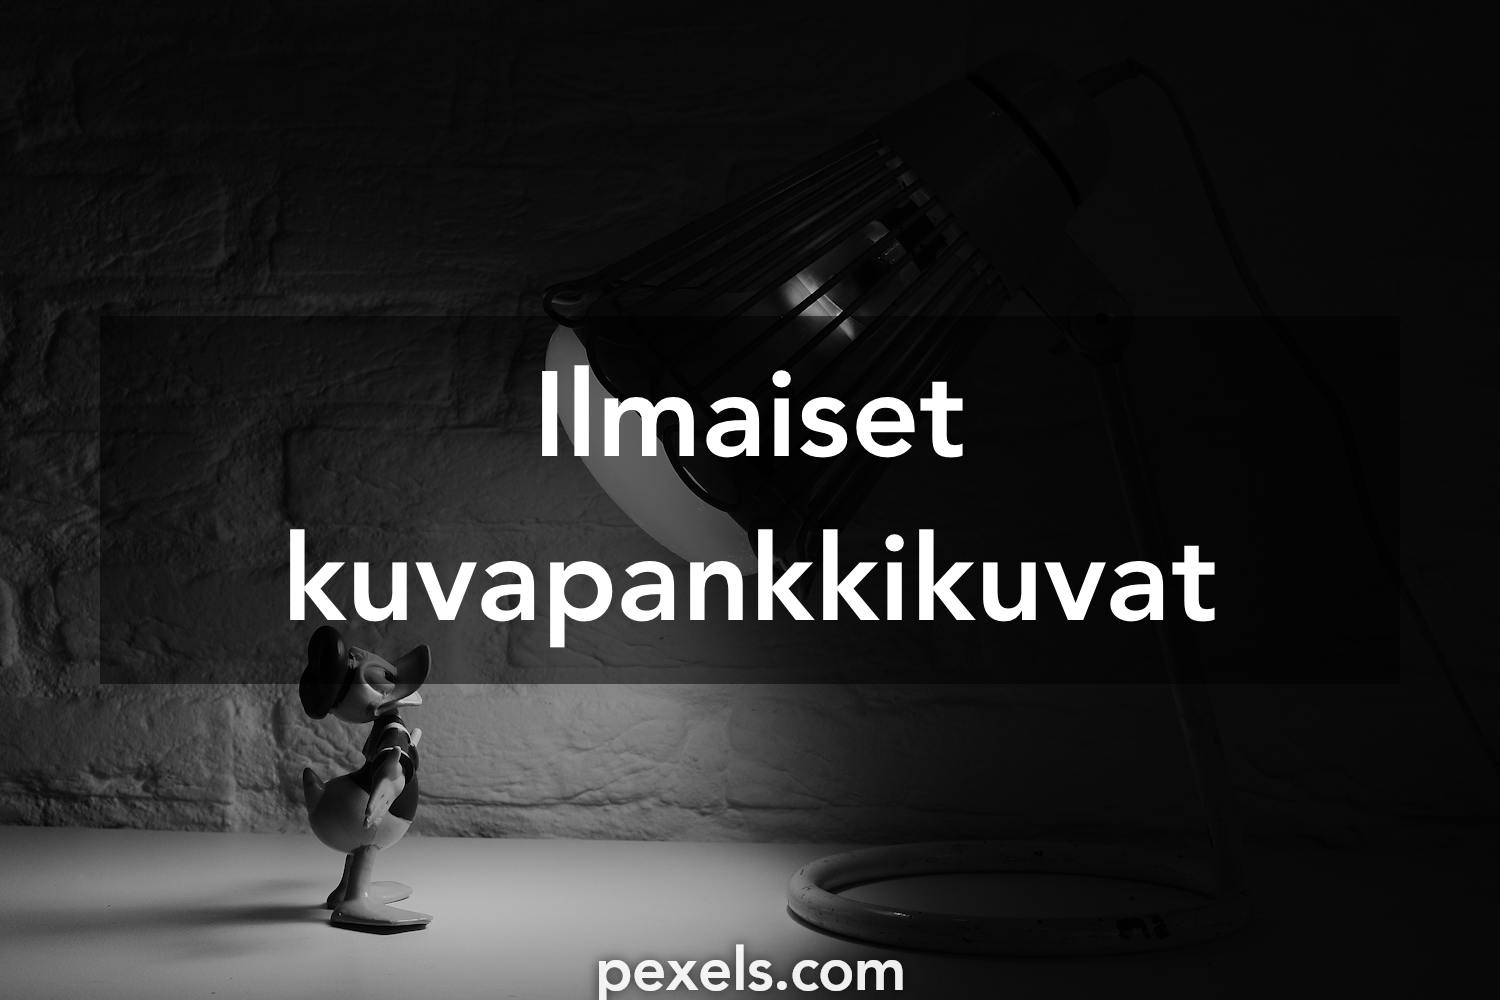 3 000+ parasta kuvaa aiheesta Aku Ankka · Täysin ilmainen lataus ·  Pexels-kuvituskuvapankkikuvat